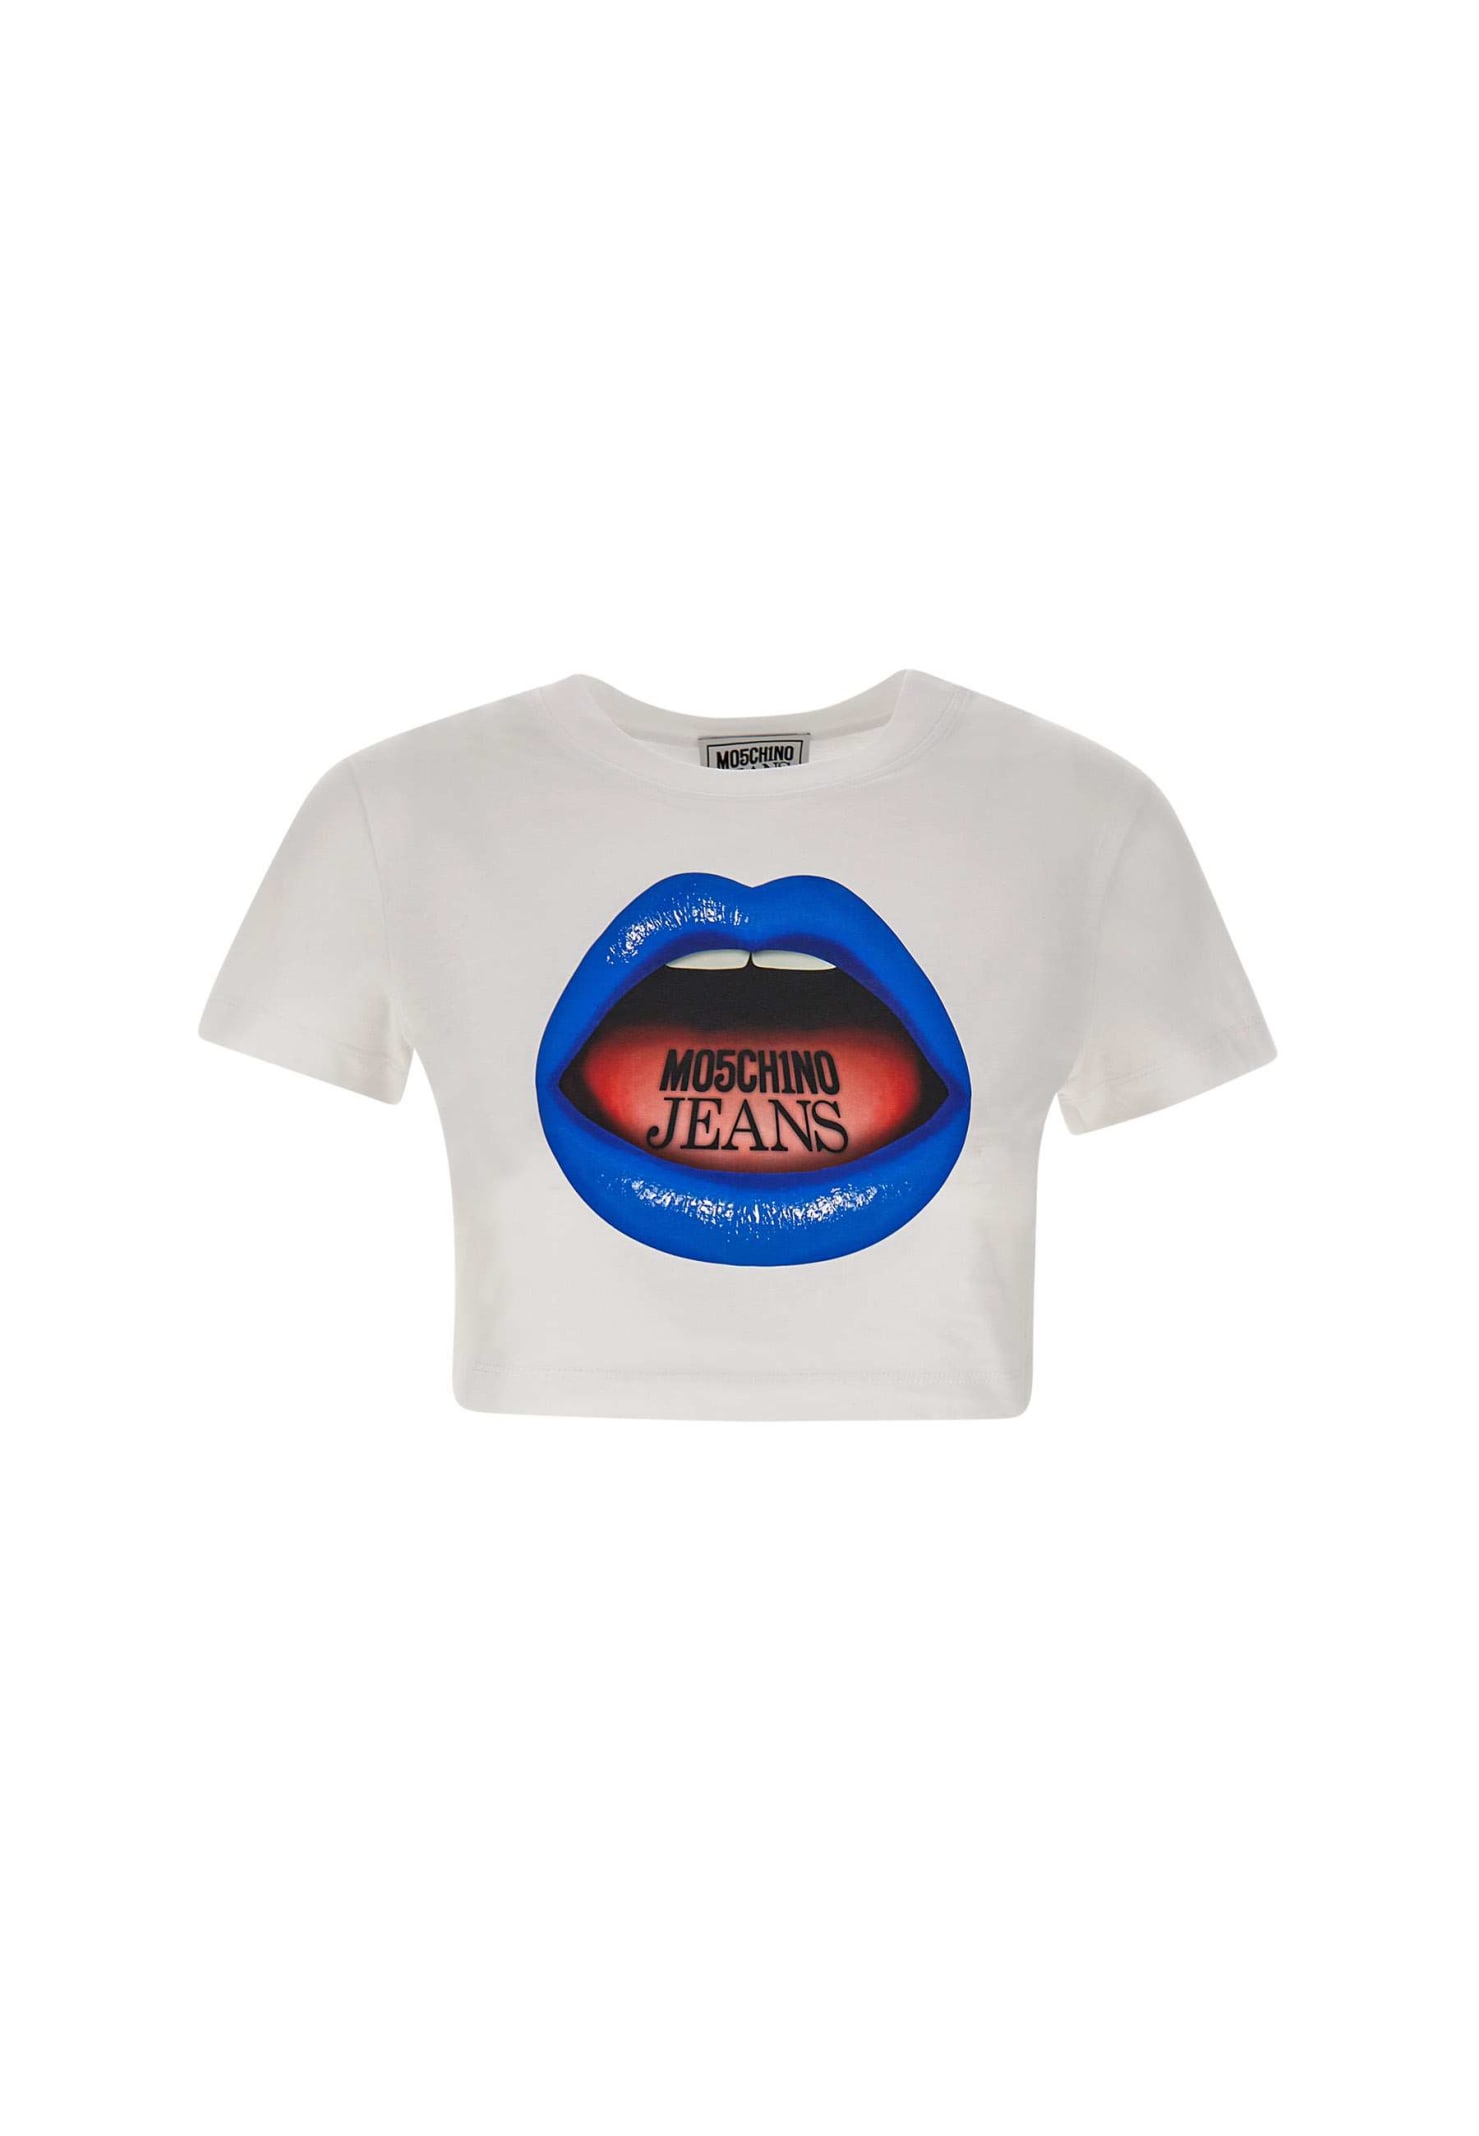 mouth Print Cotton T-shirt